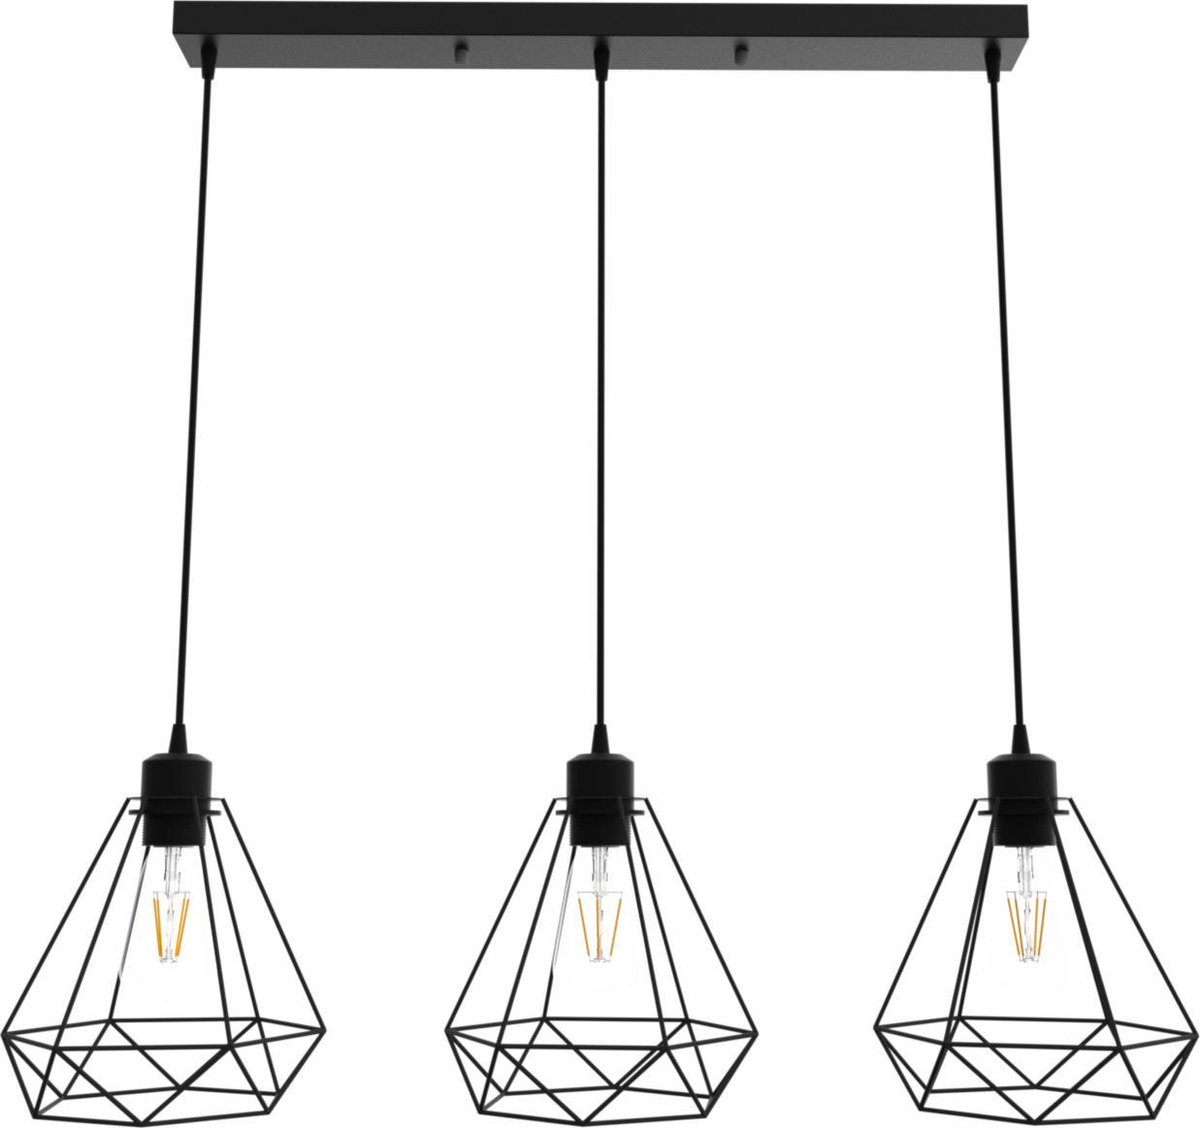 Flow Lines - Hanglamp - hanglampen eetkamer - hanglamp industrieel - hanglamp zwart - hanglamp kinderkamer - hanglamp slaapkamer - hanglampen woonkamer - zwart - E27